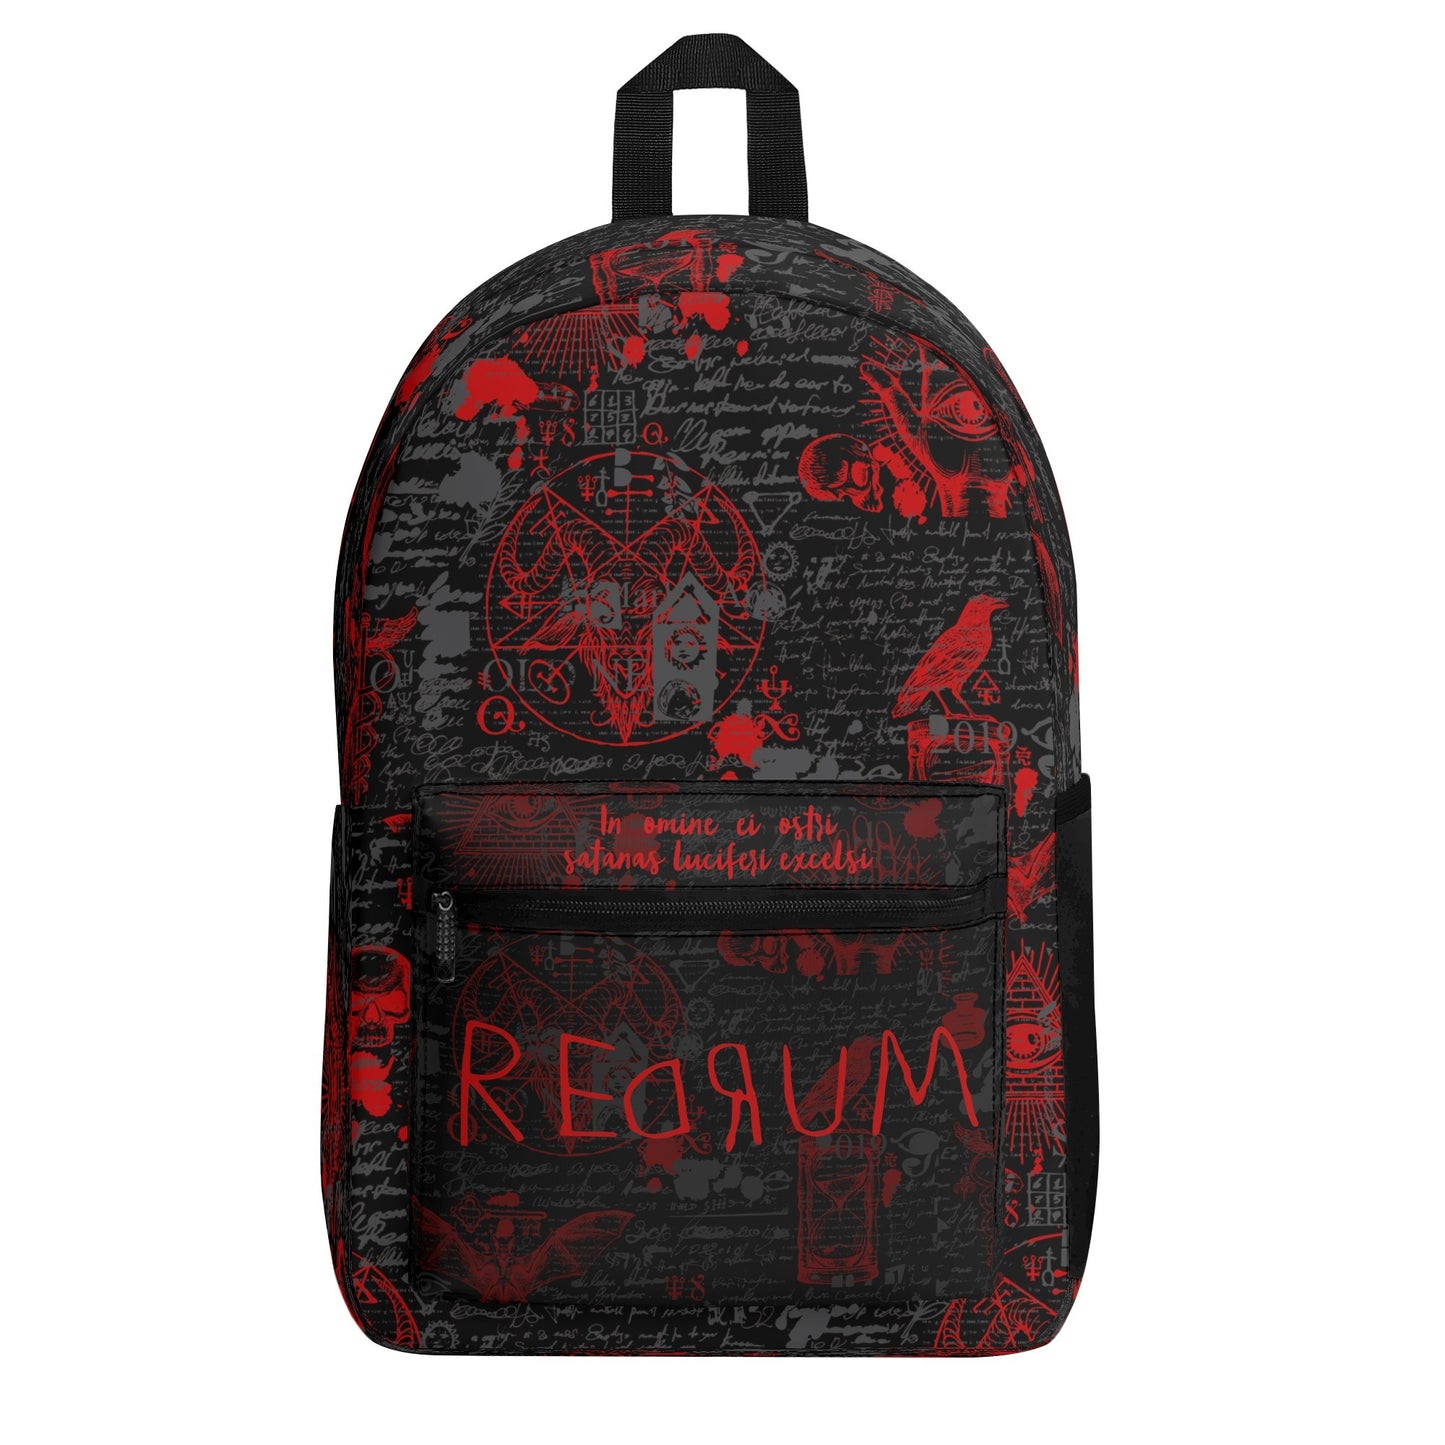 Redrum Vintage Backpack